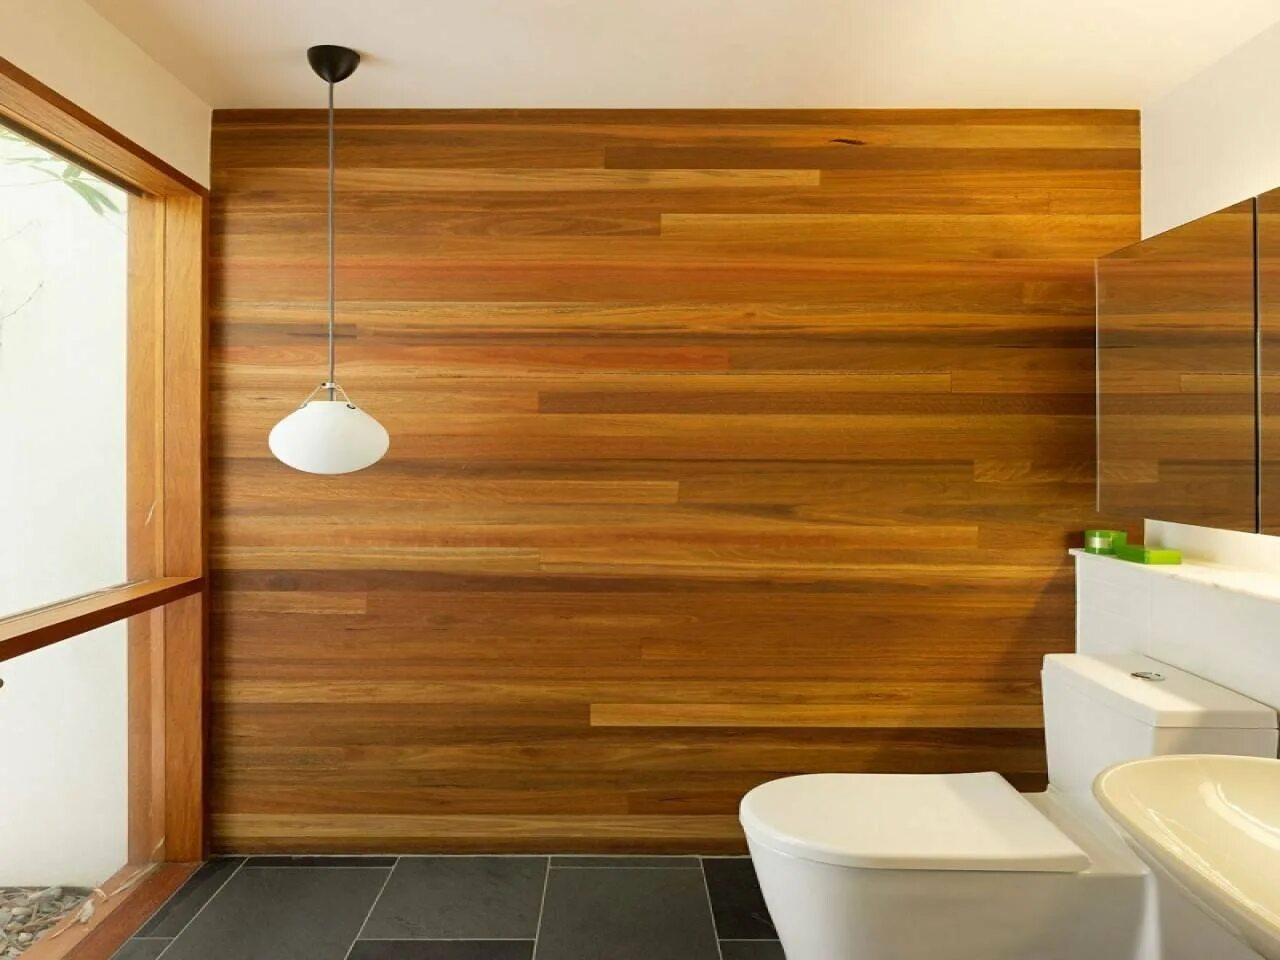 Мдф панели для ванной комнаты. Панели для ванной под дерево. Панели для отделки стен в ванной. Дерево в интерьере ванной комнаты. Панели МДФ для стен в ванной.